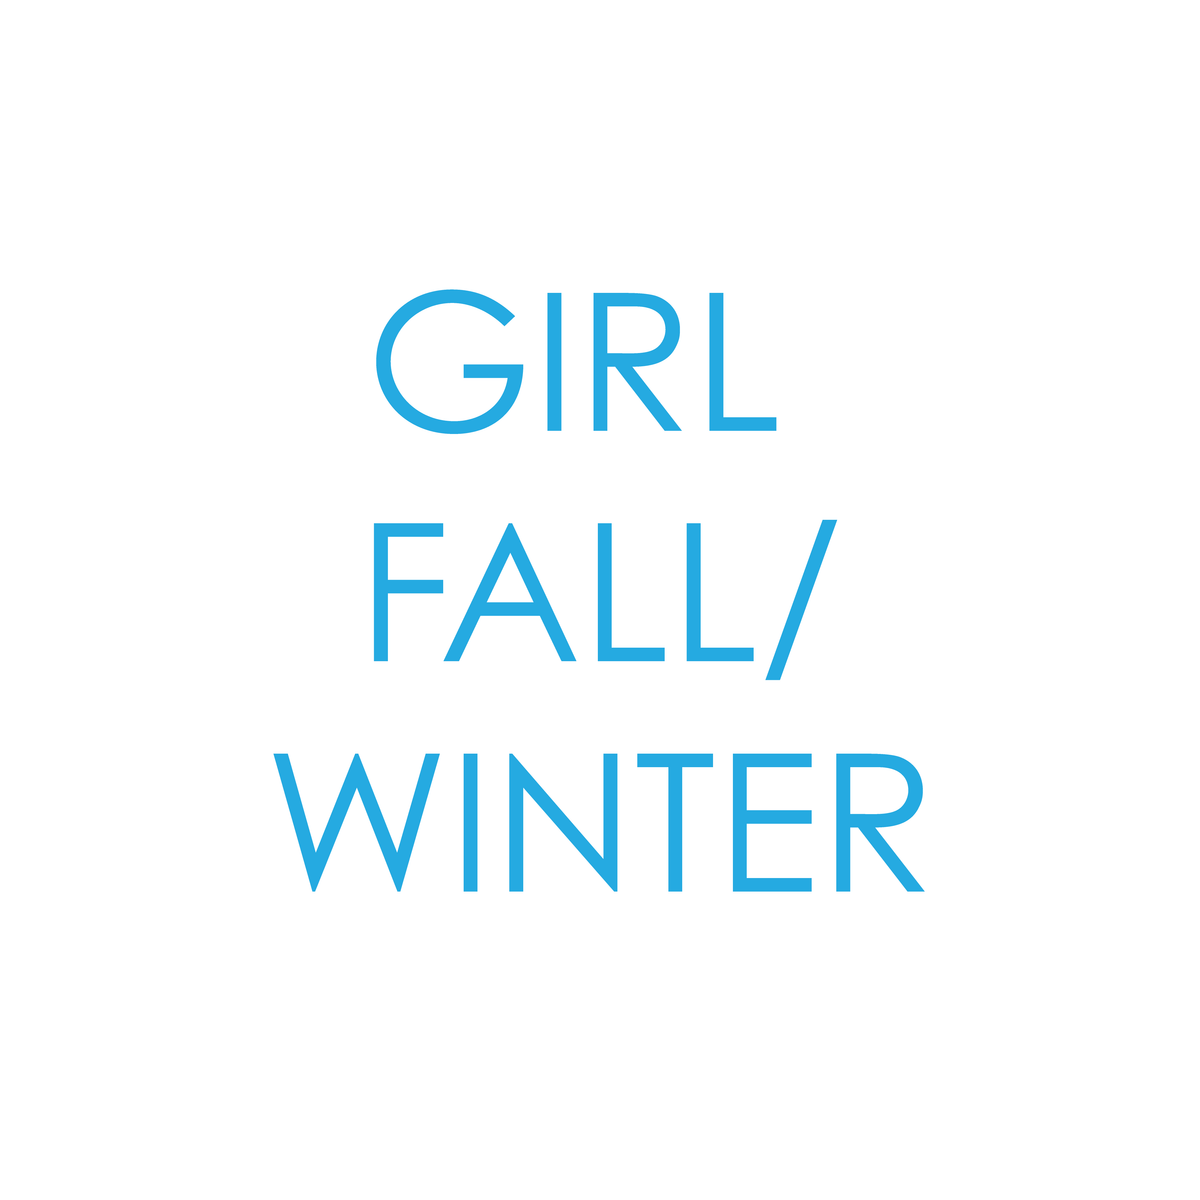 GIRL FALL/WINTER